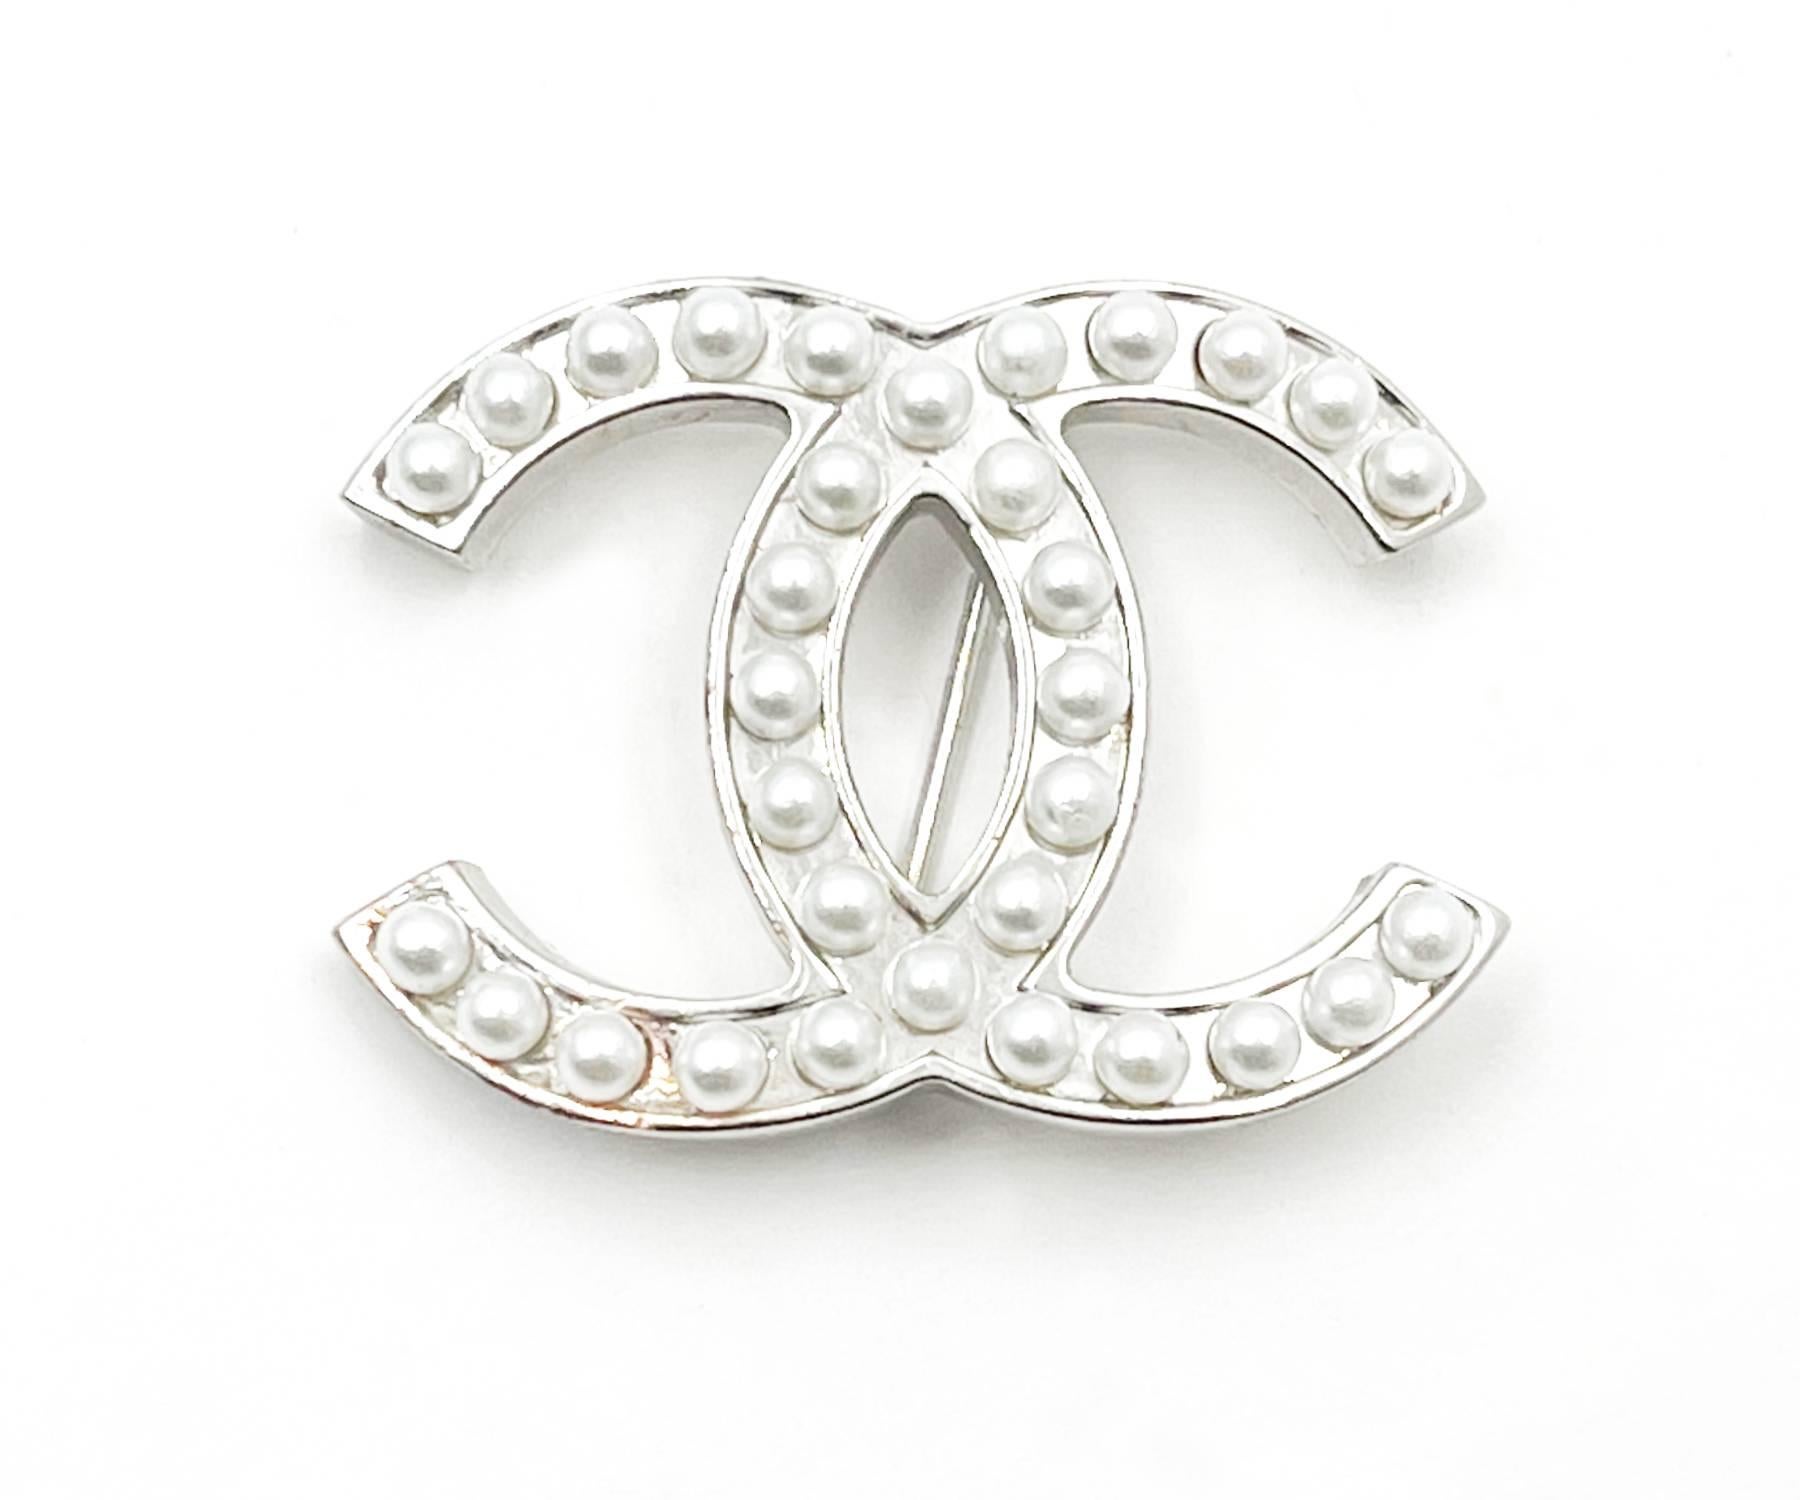 Chanel Classic Silber CC Perlenbrosche

*Markierung 05
*Hergestellt in Frankreich
*Kommt mit dem Originalkarton

-ca. 1,6″ x 1″
-sehr hübsch und klassisch
-Sehr guter Zustand

2075-43572
